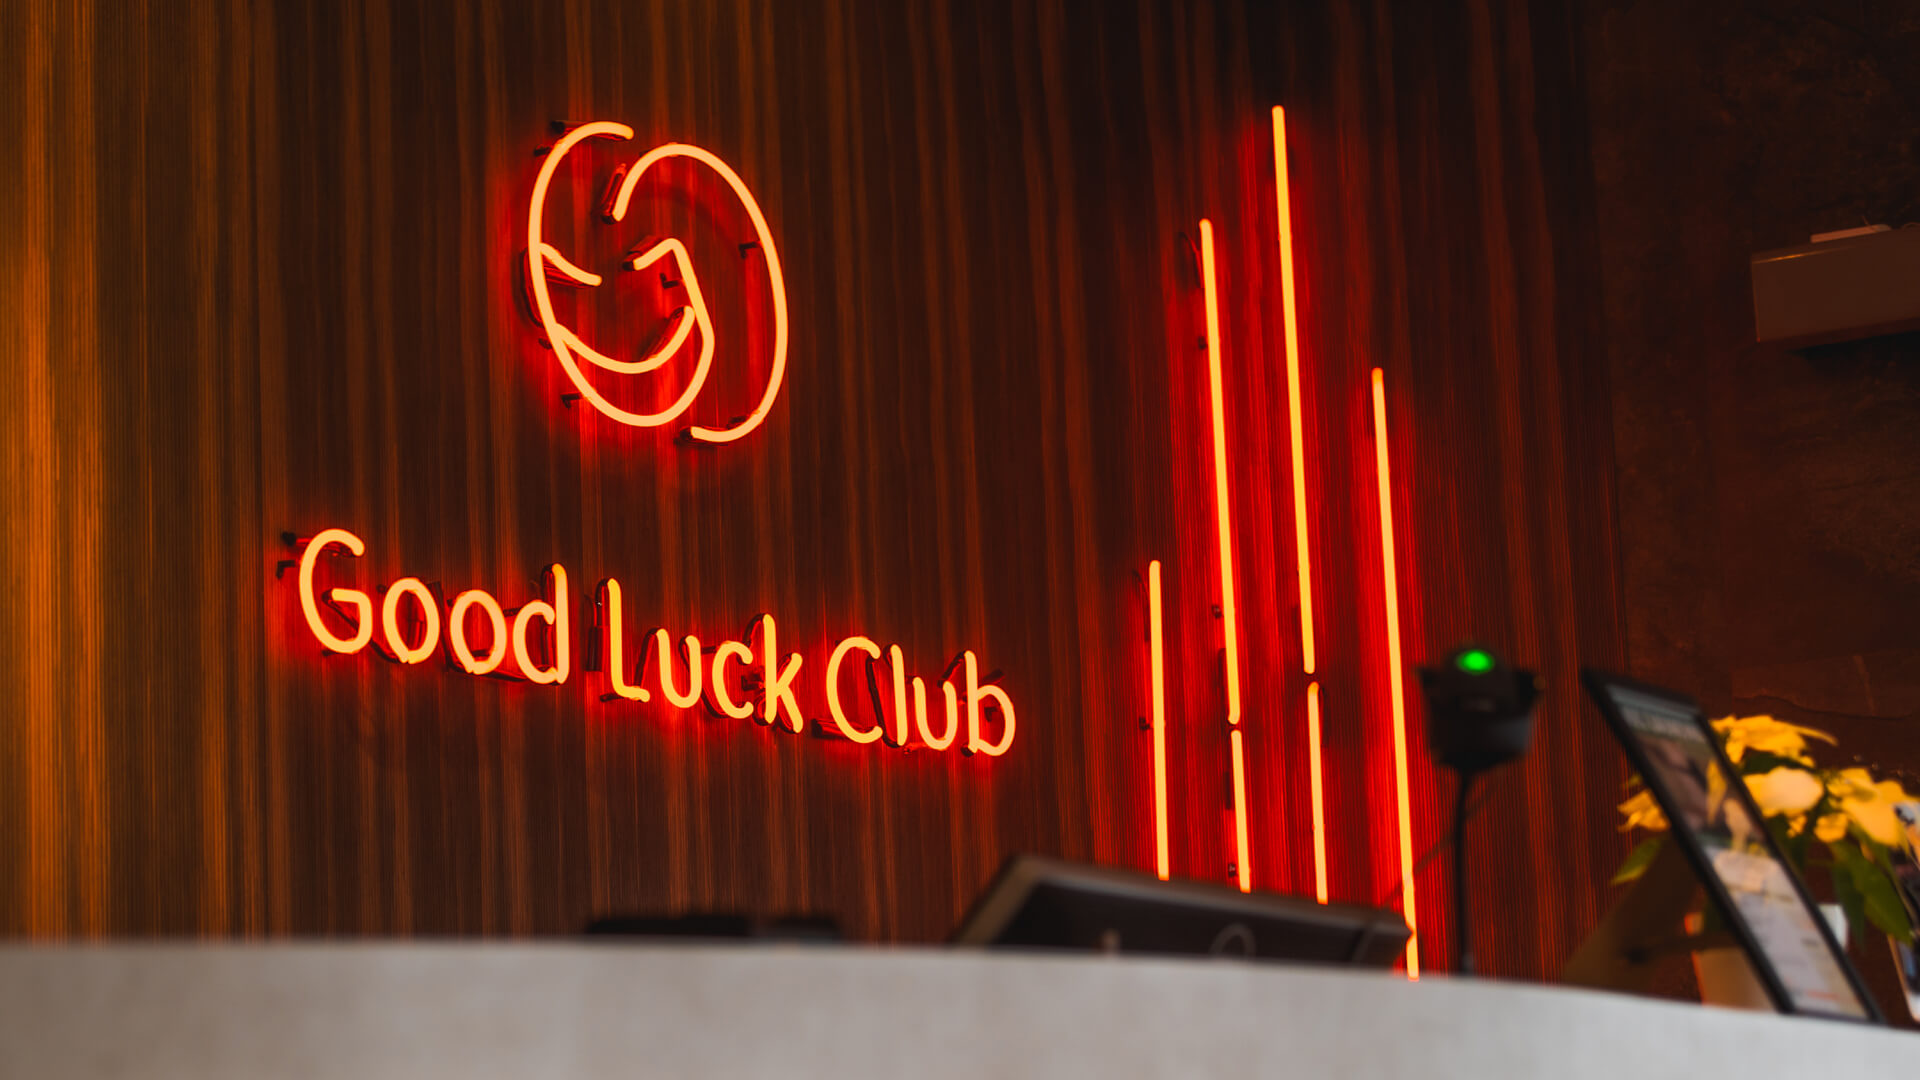 Club della fortuna - Insegna al neon rossa nell'area della reception con il logo dell'azienda.